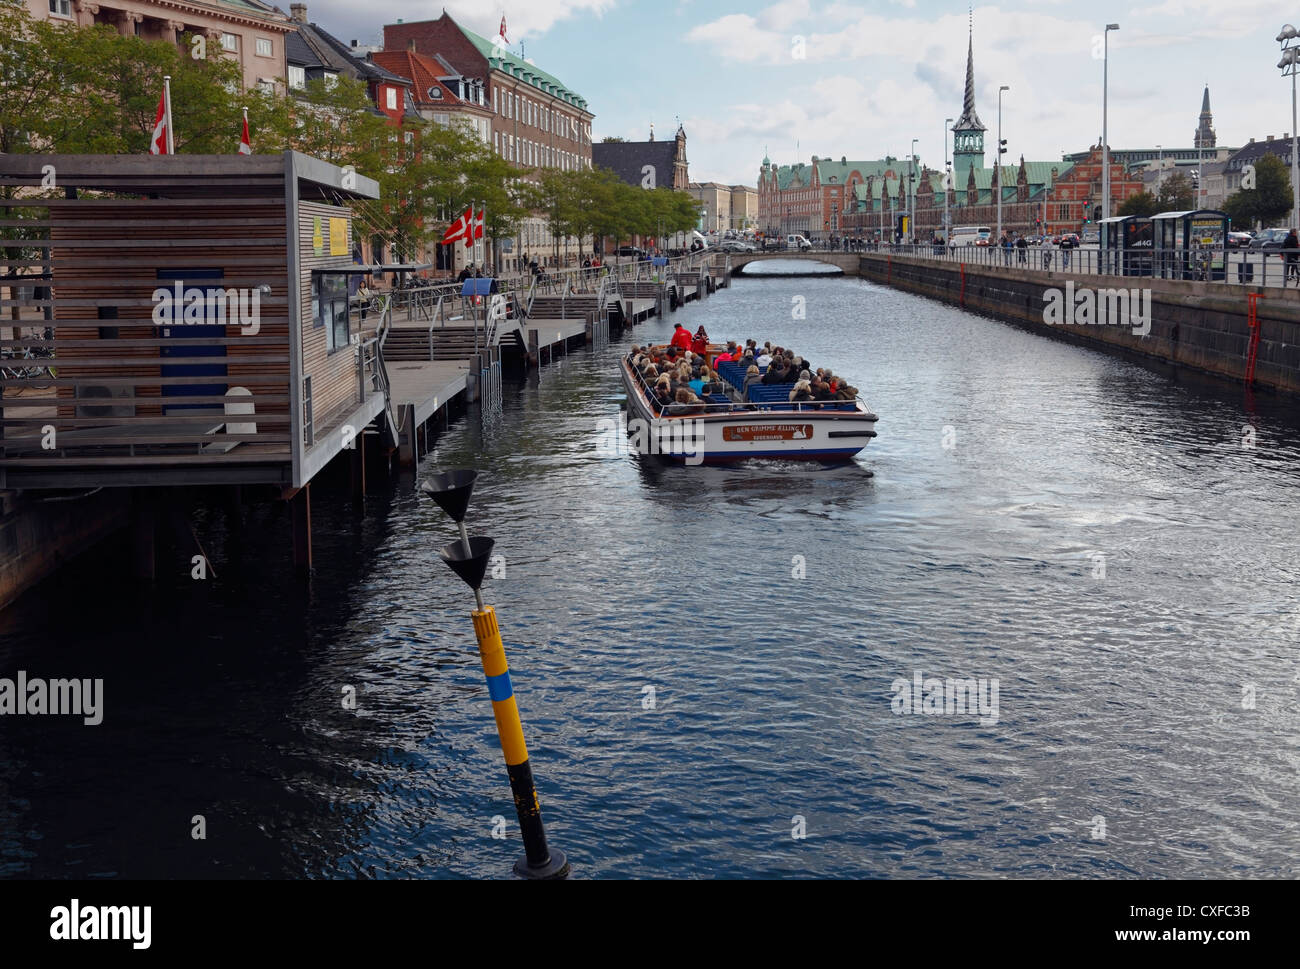 Die Grachtenfahrt Boot, die "das hässliche Entlein" nur an Bord Fahrgäste an der Haltestelle "Ved Stranden" ergriffen hat. Kopenhagen, Dänemark. Stockfoto